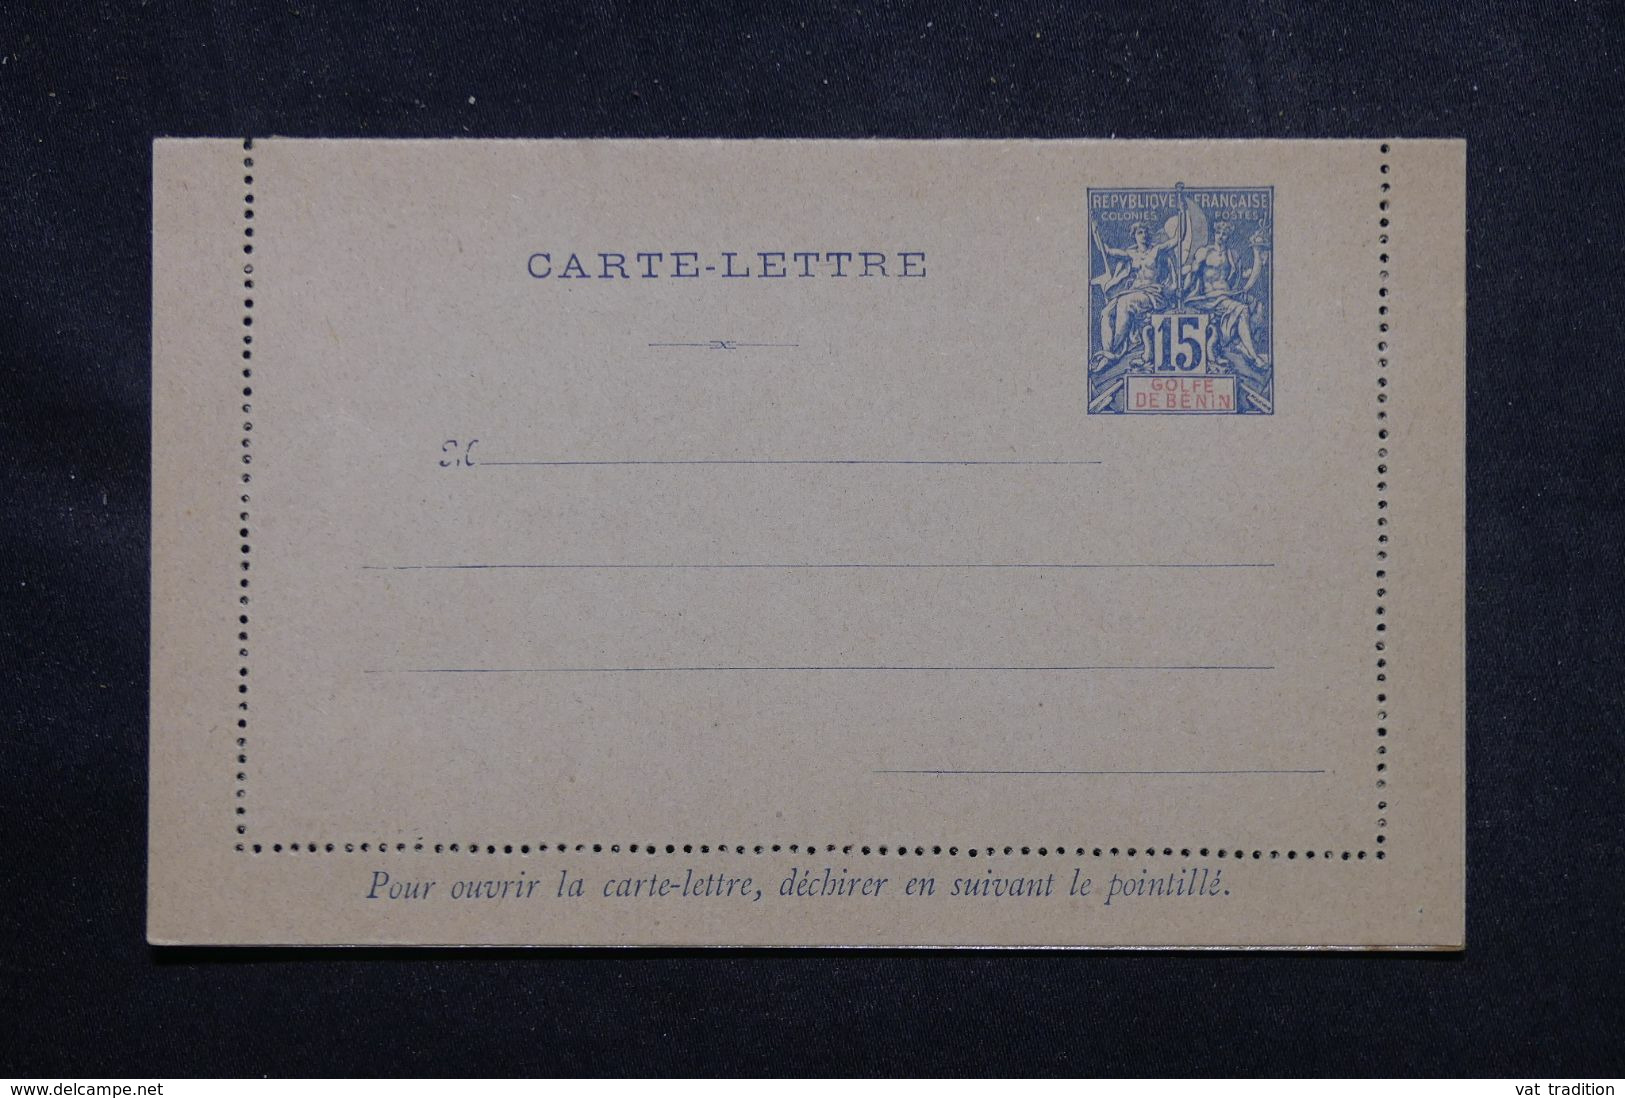 BÉNIN - Entier Postal Carte Lettre Au Type Groupe, Non Circulé - L 69326 - Covers & Documents